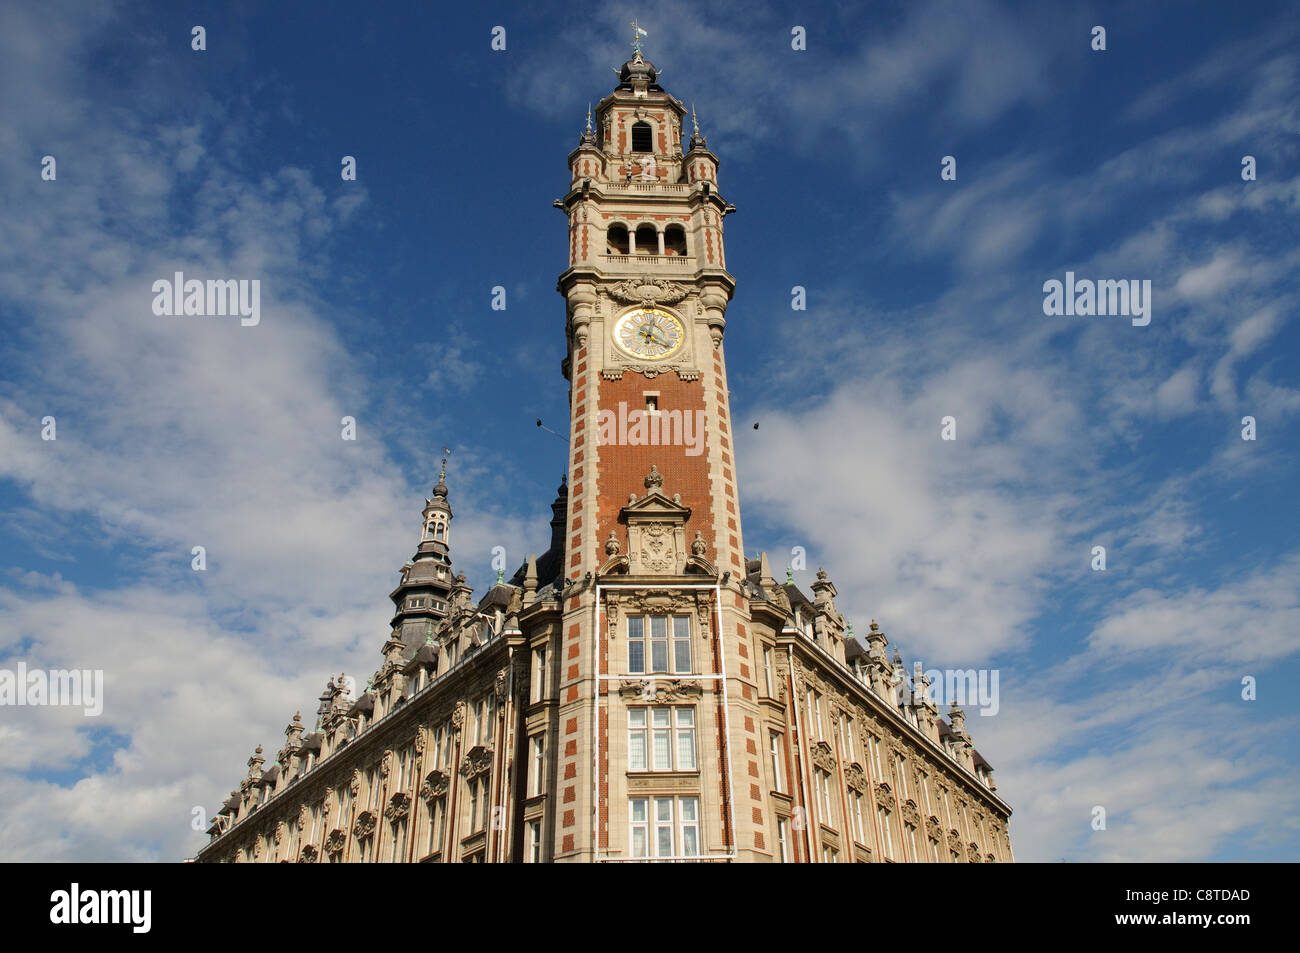 Torre beffroi immagini e fotografie stock ad alta risoluzione - Alamy